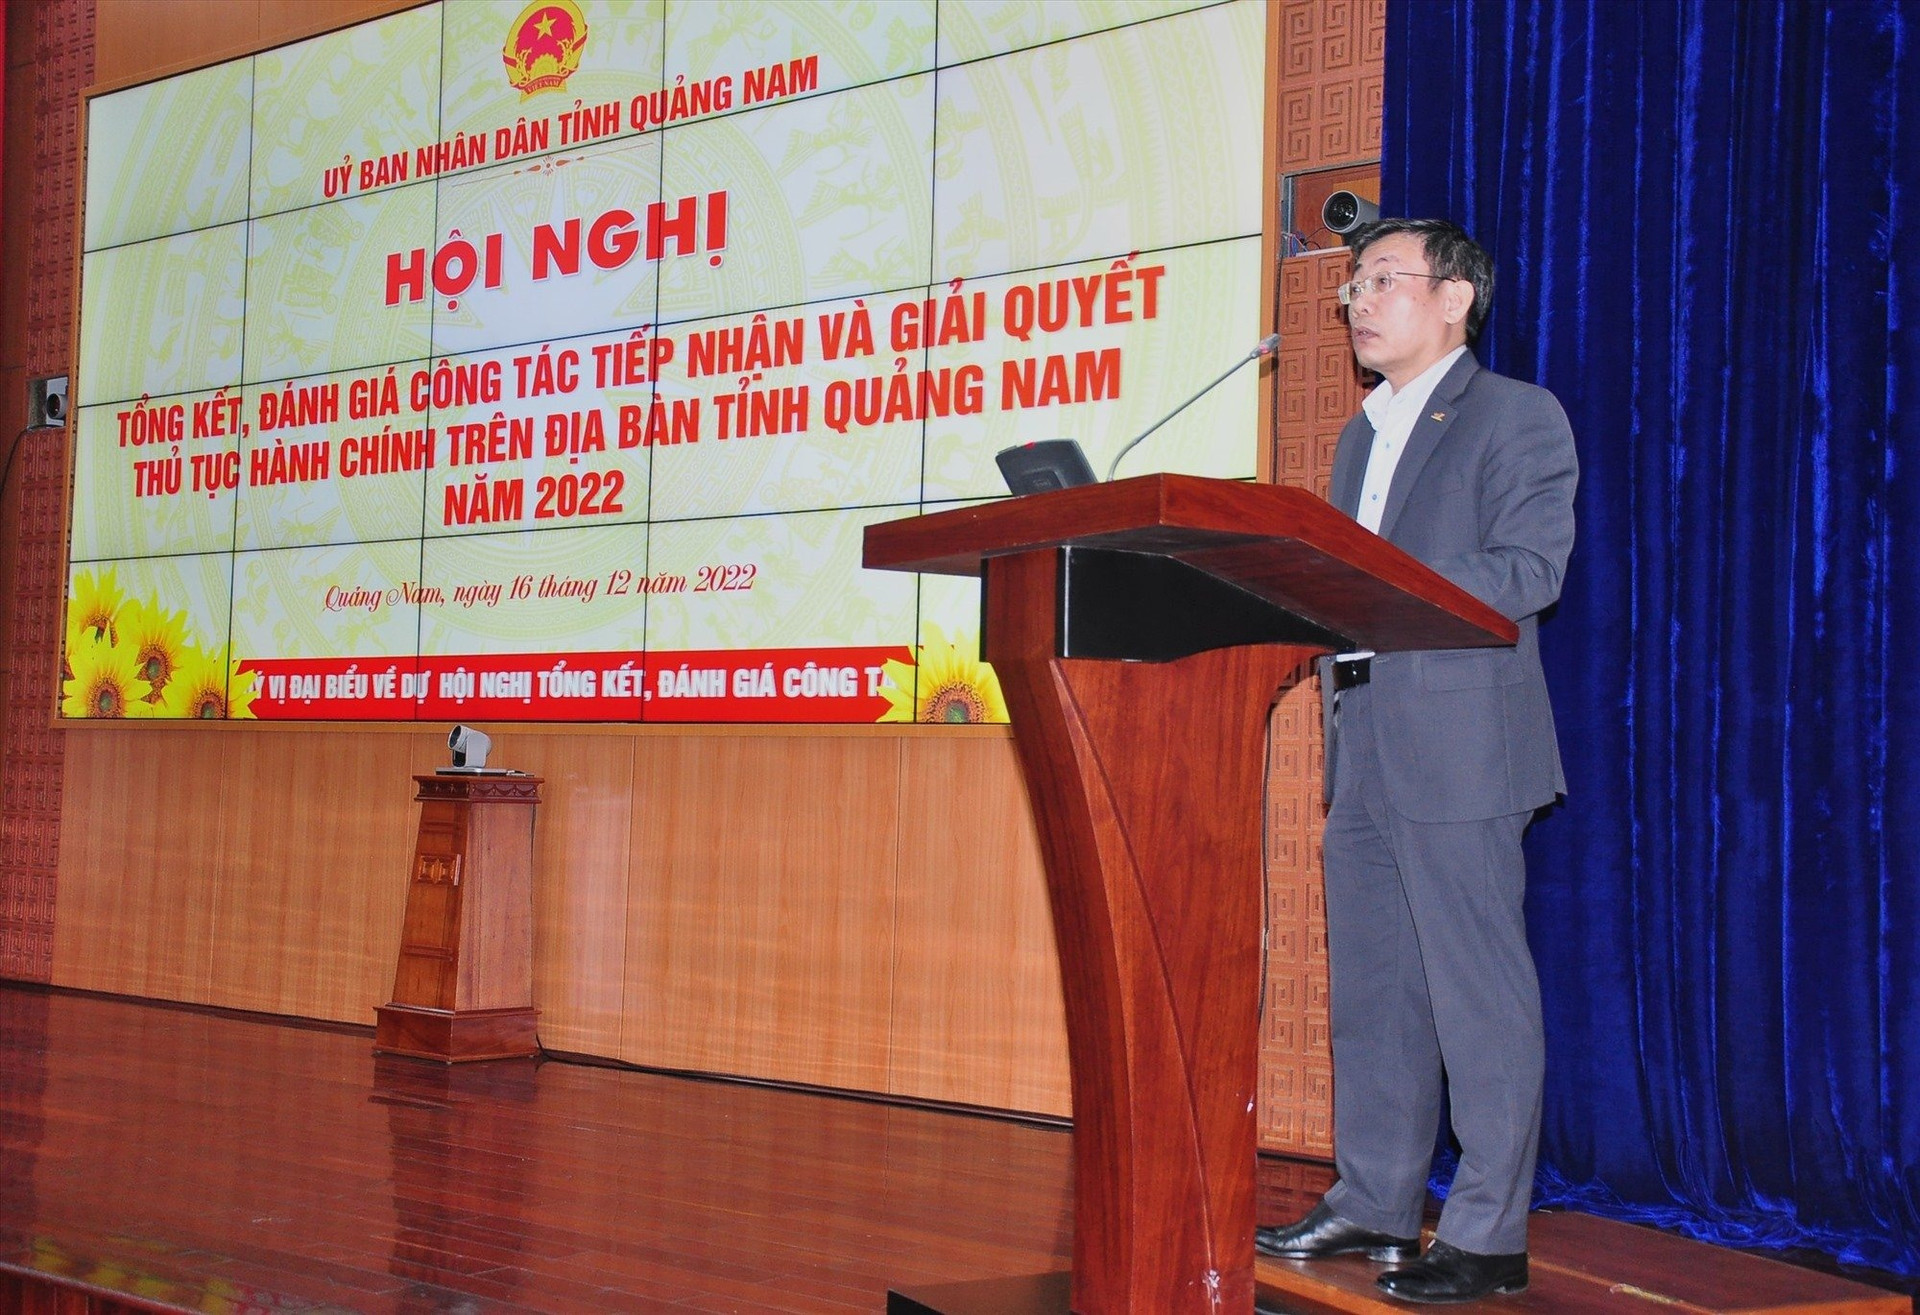 Ông Trần Việt Hùng - Giám đốc Bưu điện Quảng Nam phát biểu tại hội nghị tổng kết, đánh giá công tác tiếp nhận và giải quyết TTHC năm 2022.